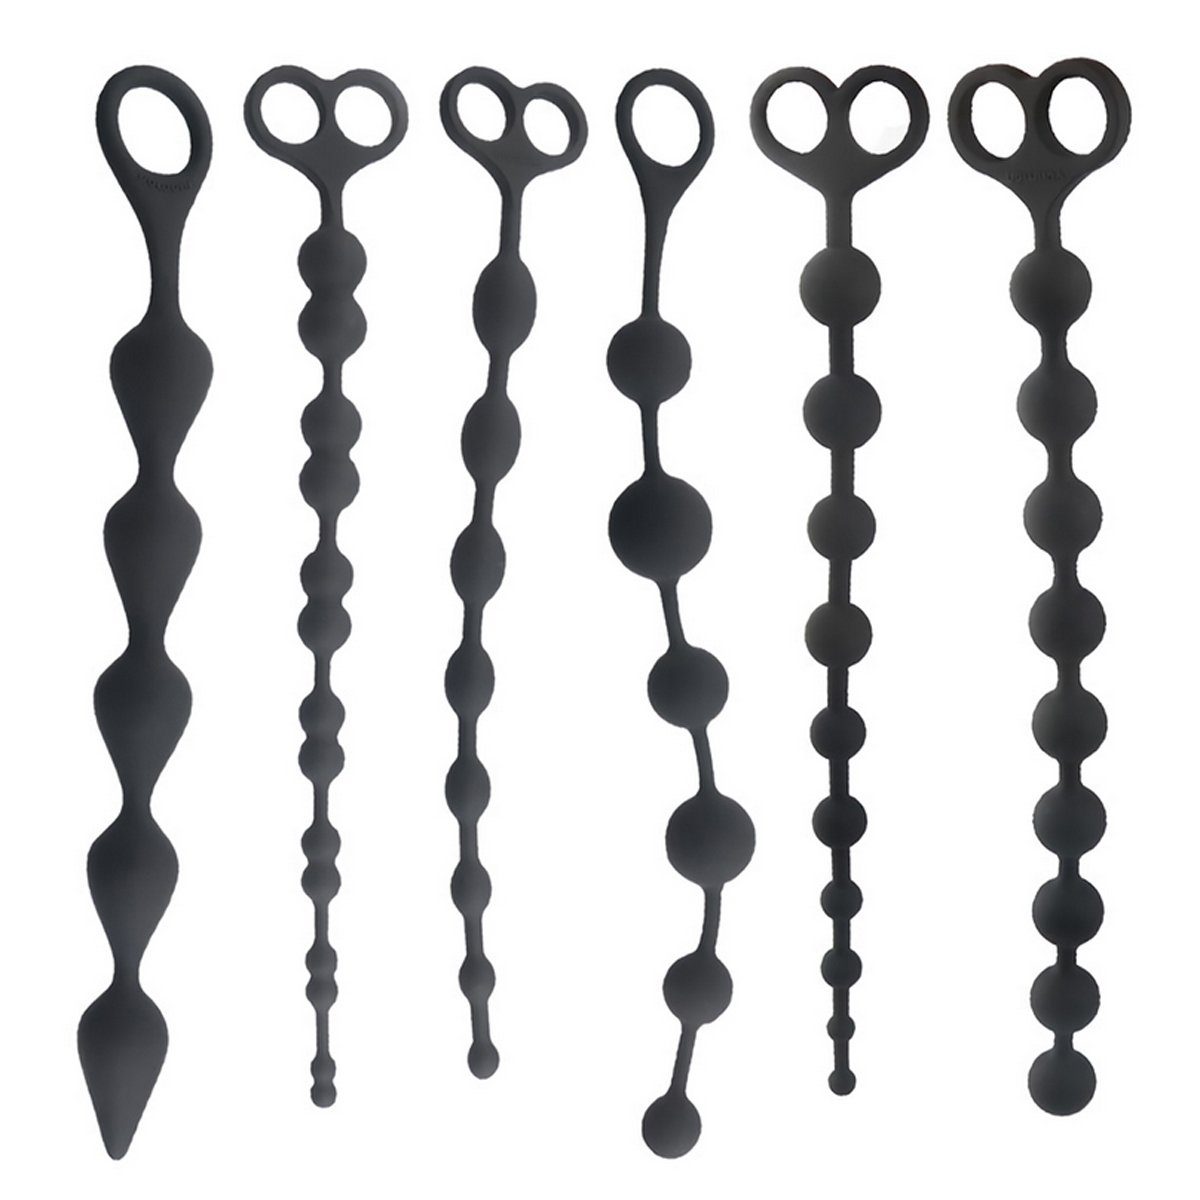 TPFSecret Analkette für Männer und Frauen, ergonomische große 31,5cm Anal Perlen Kette, mit 9 Kugeln und Rückholschlaufe - Farbe: Schwarz